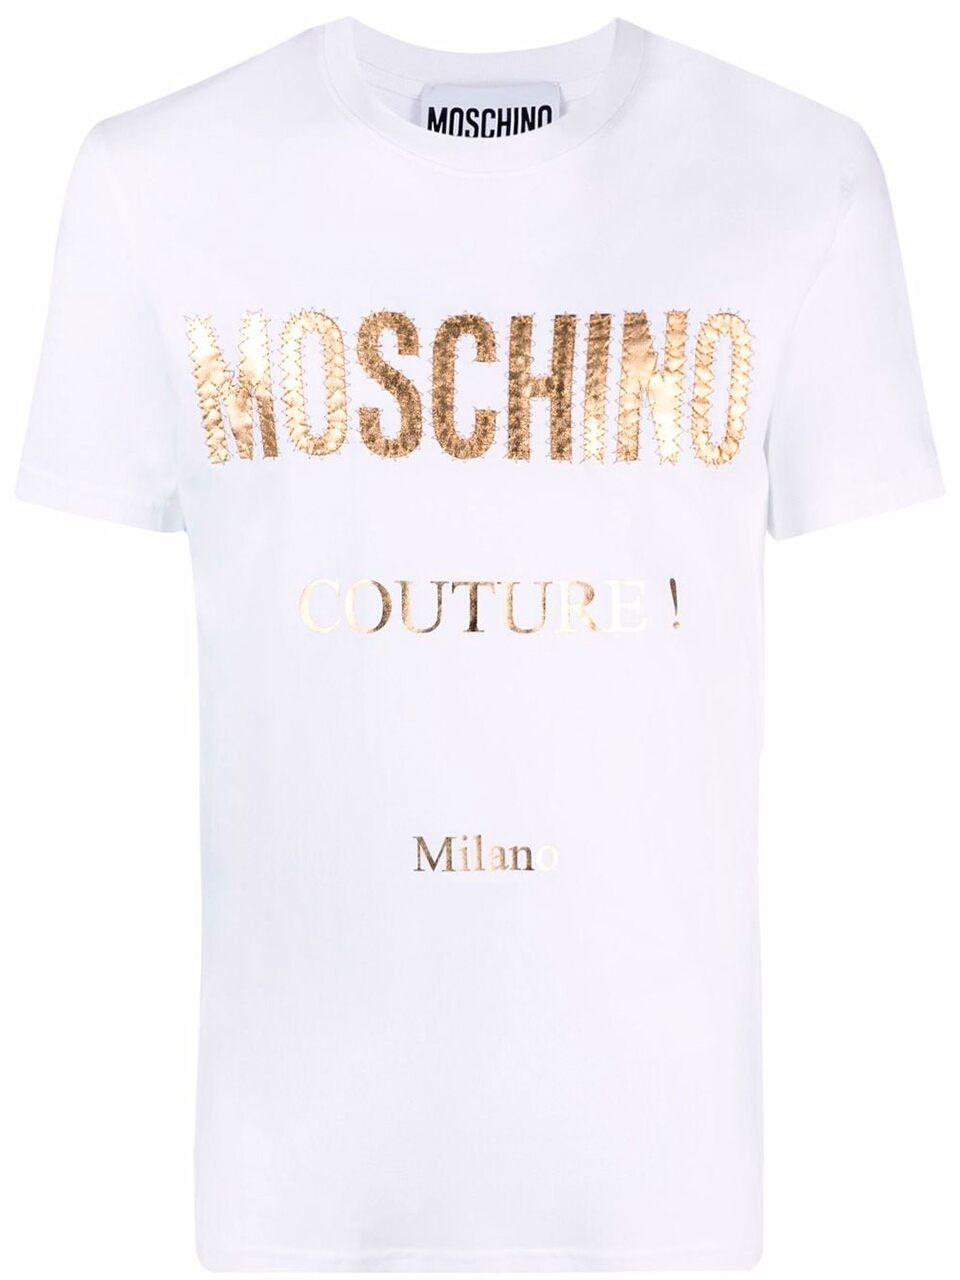 Imagem de: Camiseta Moschino Branca com Logo Couture Dourado